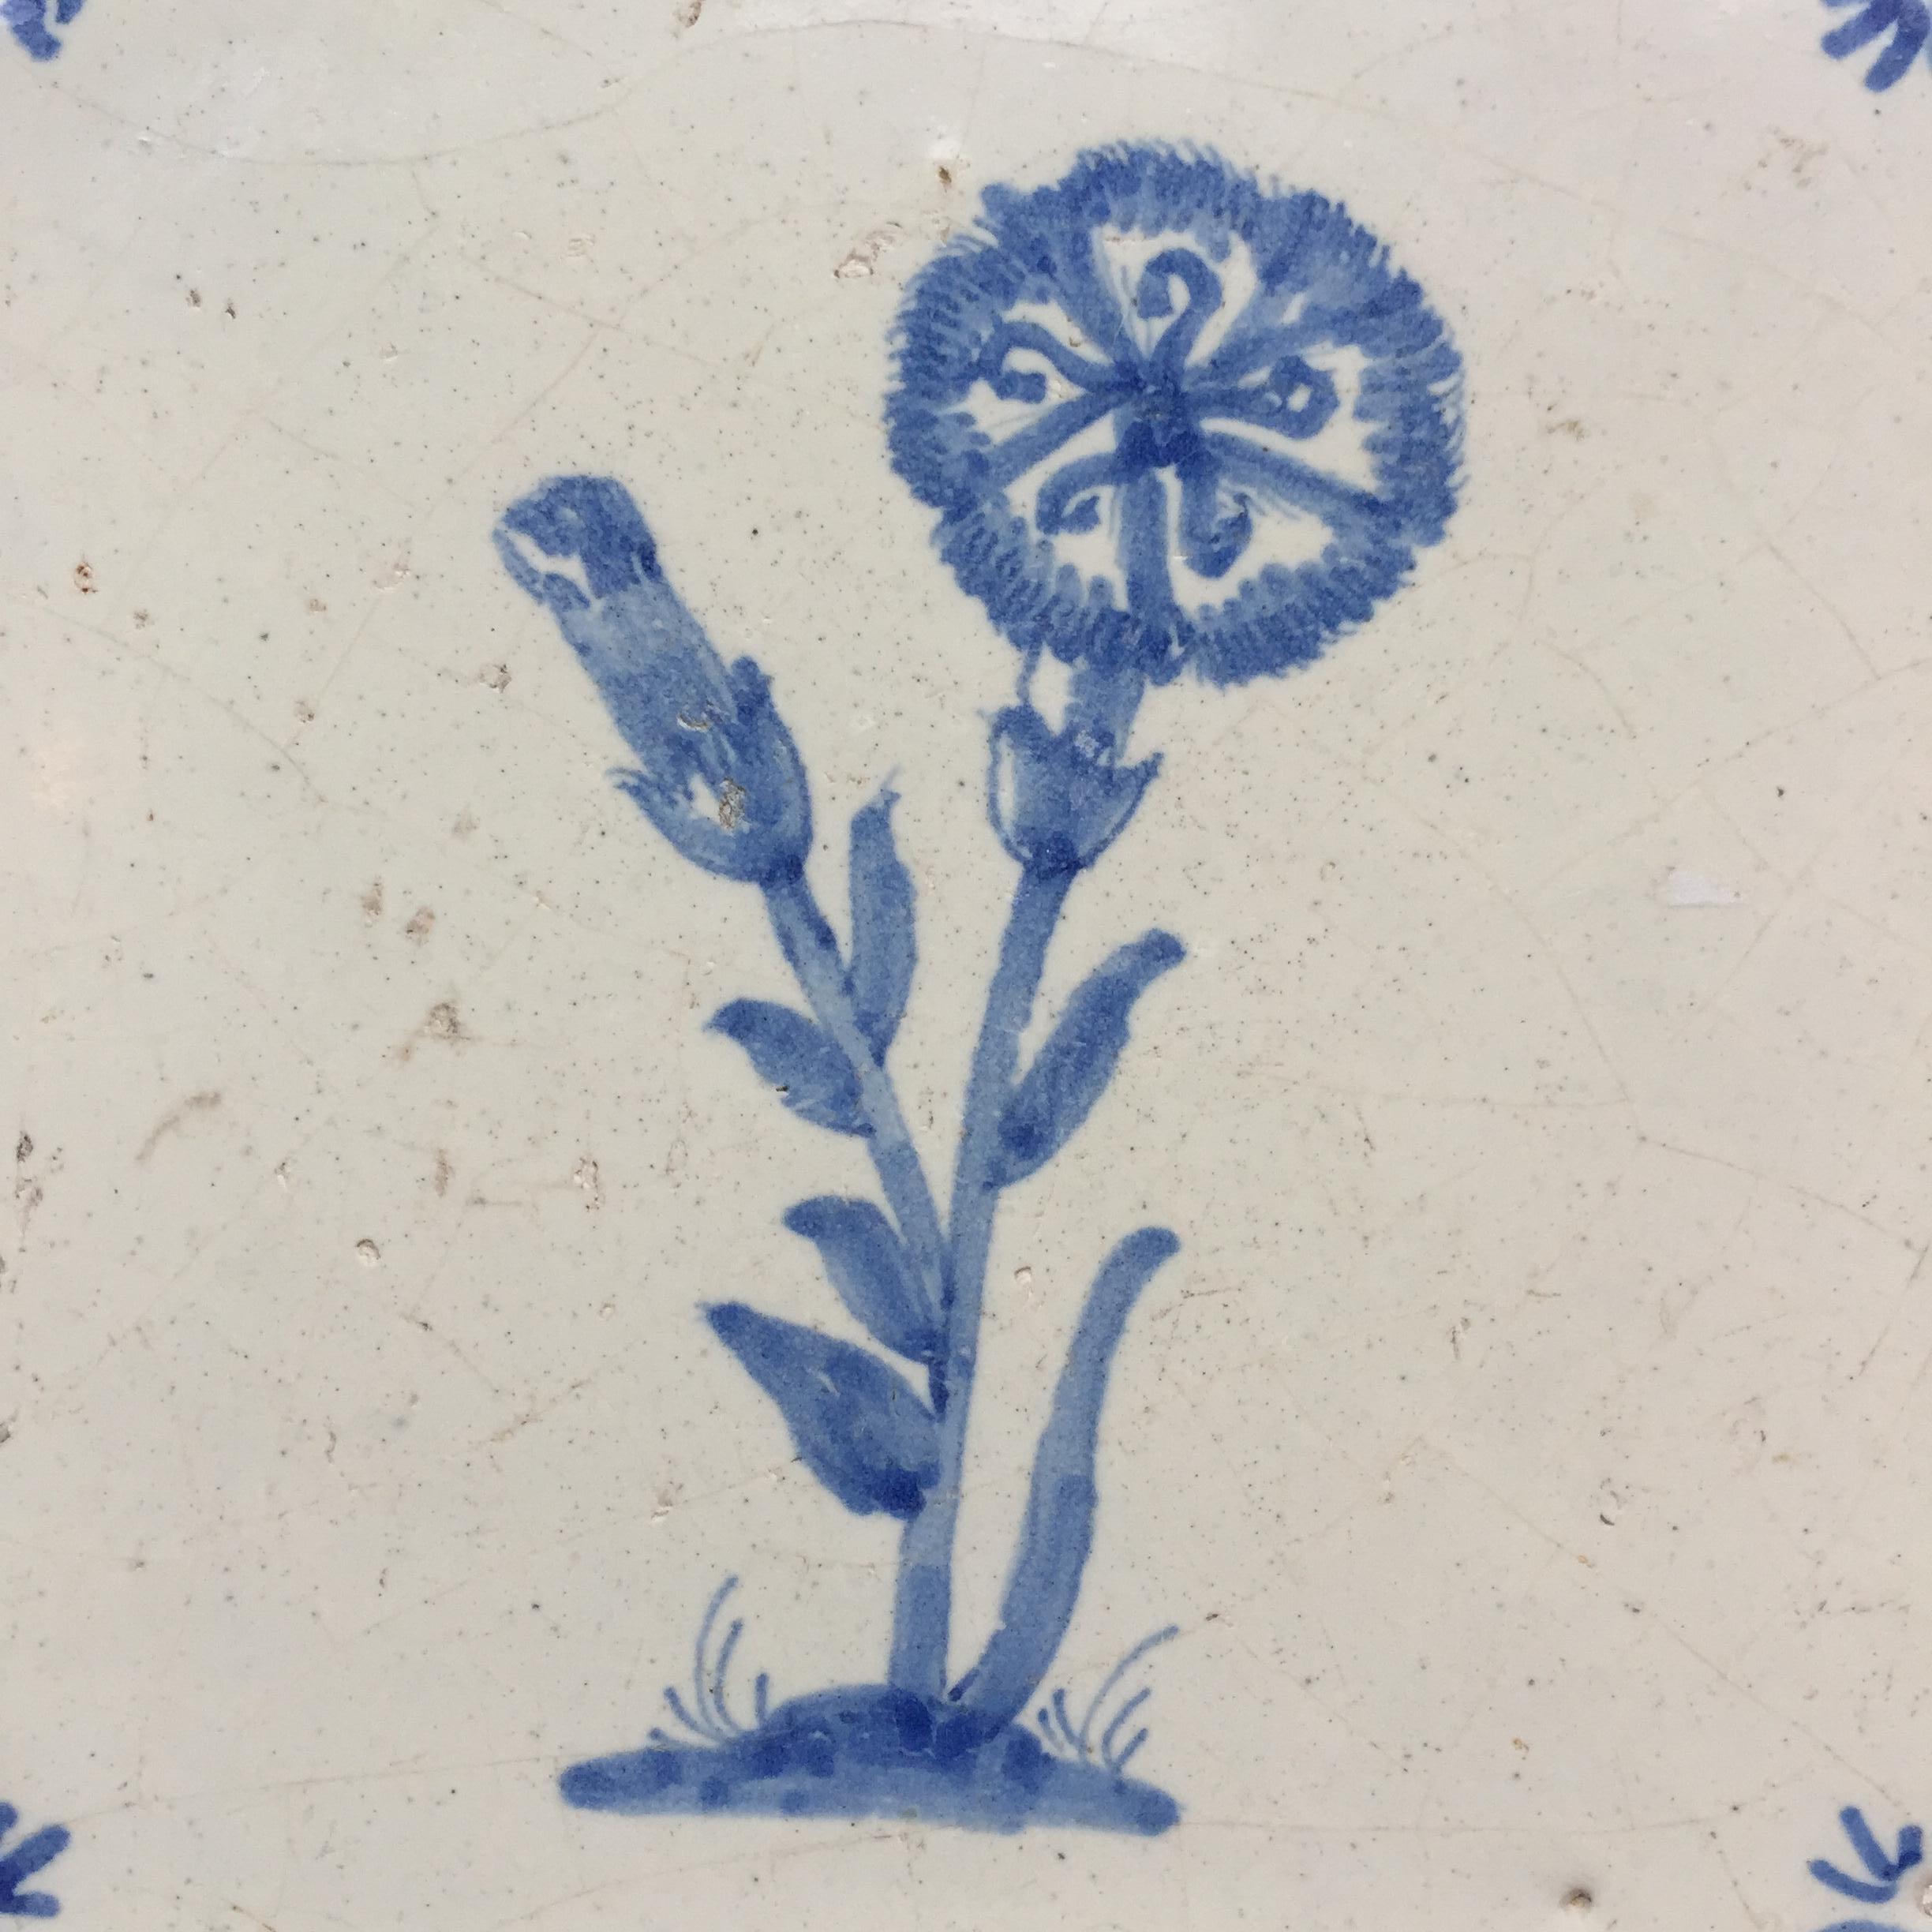 Die Niederlande
CIRCA 1660 - 1680

Eine blau-weiße holländische Fliese mit einem Dekor aus zwei Nelken. Eine in der Knospe und eine in der Blüte.
Mit kleinen Ochsenköpfen als Eckverzierung.

Die Fliese ist in sehr gutem Zustand, mit der normalen